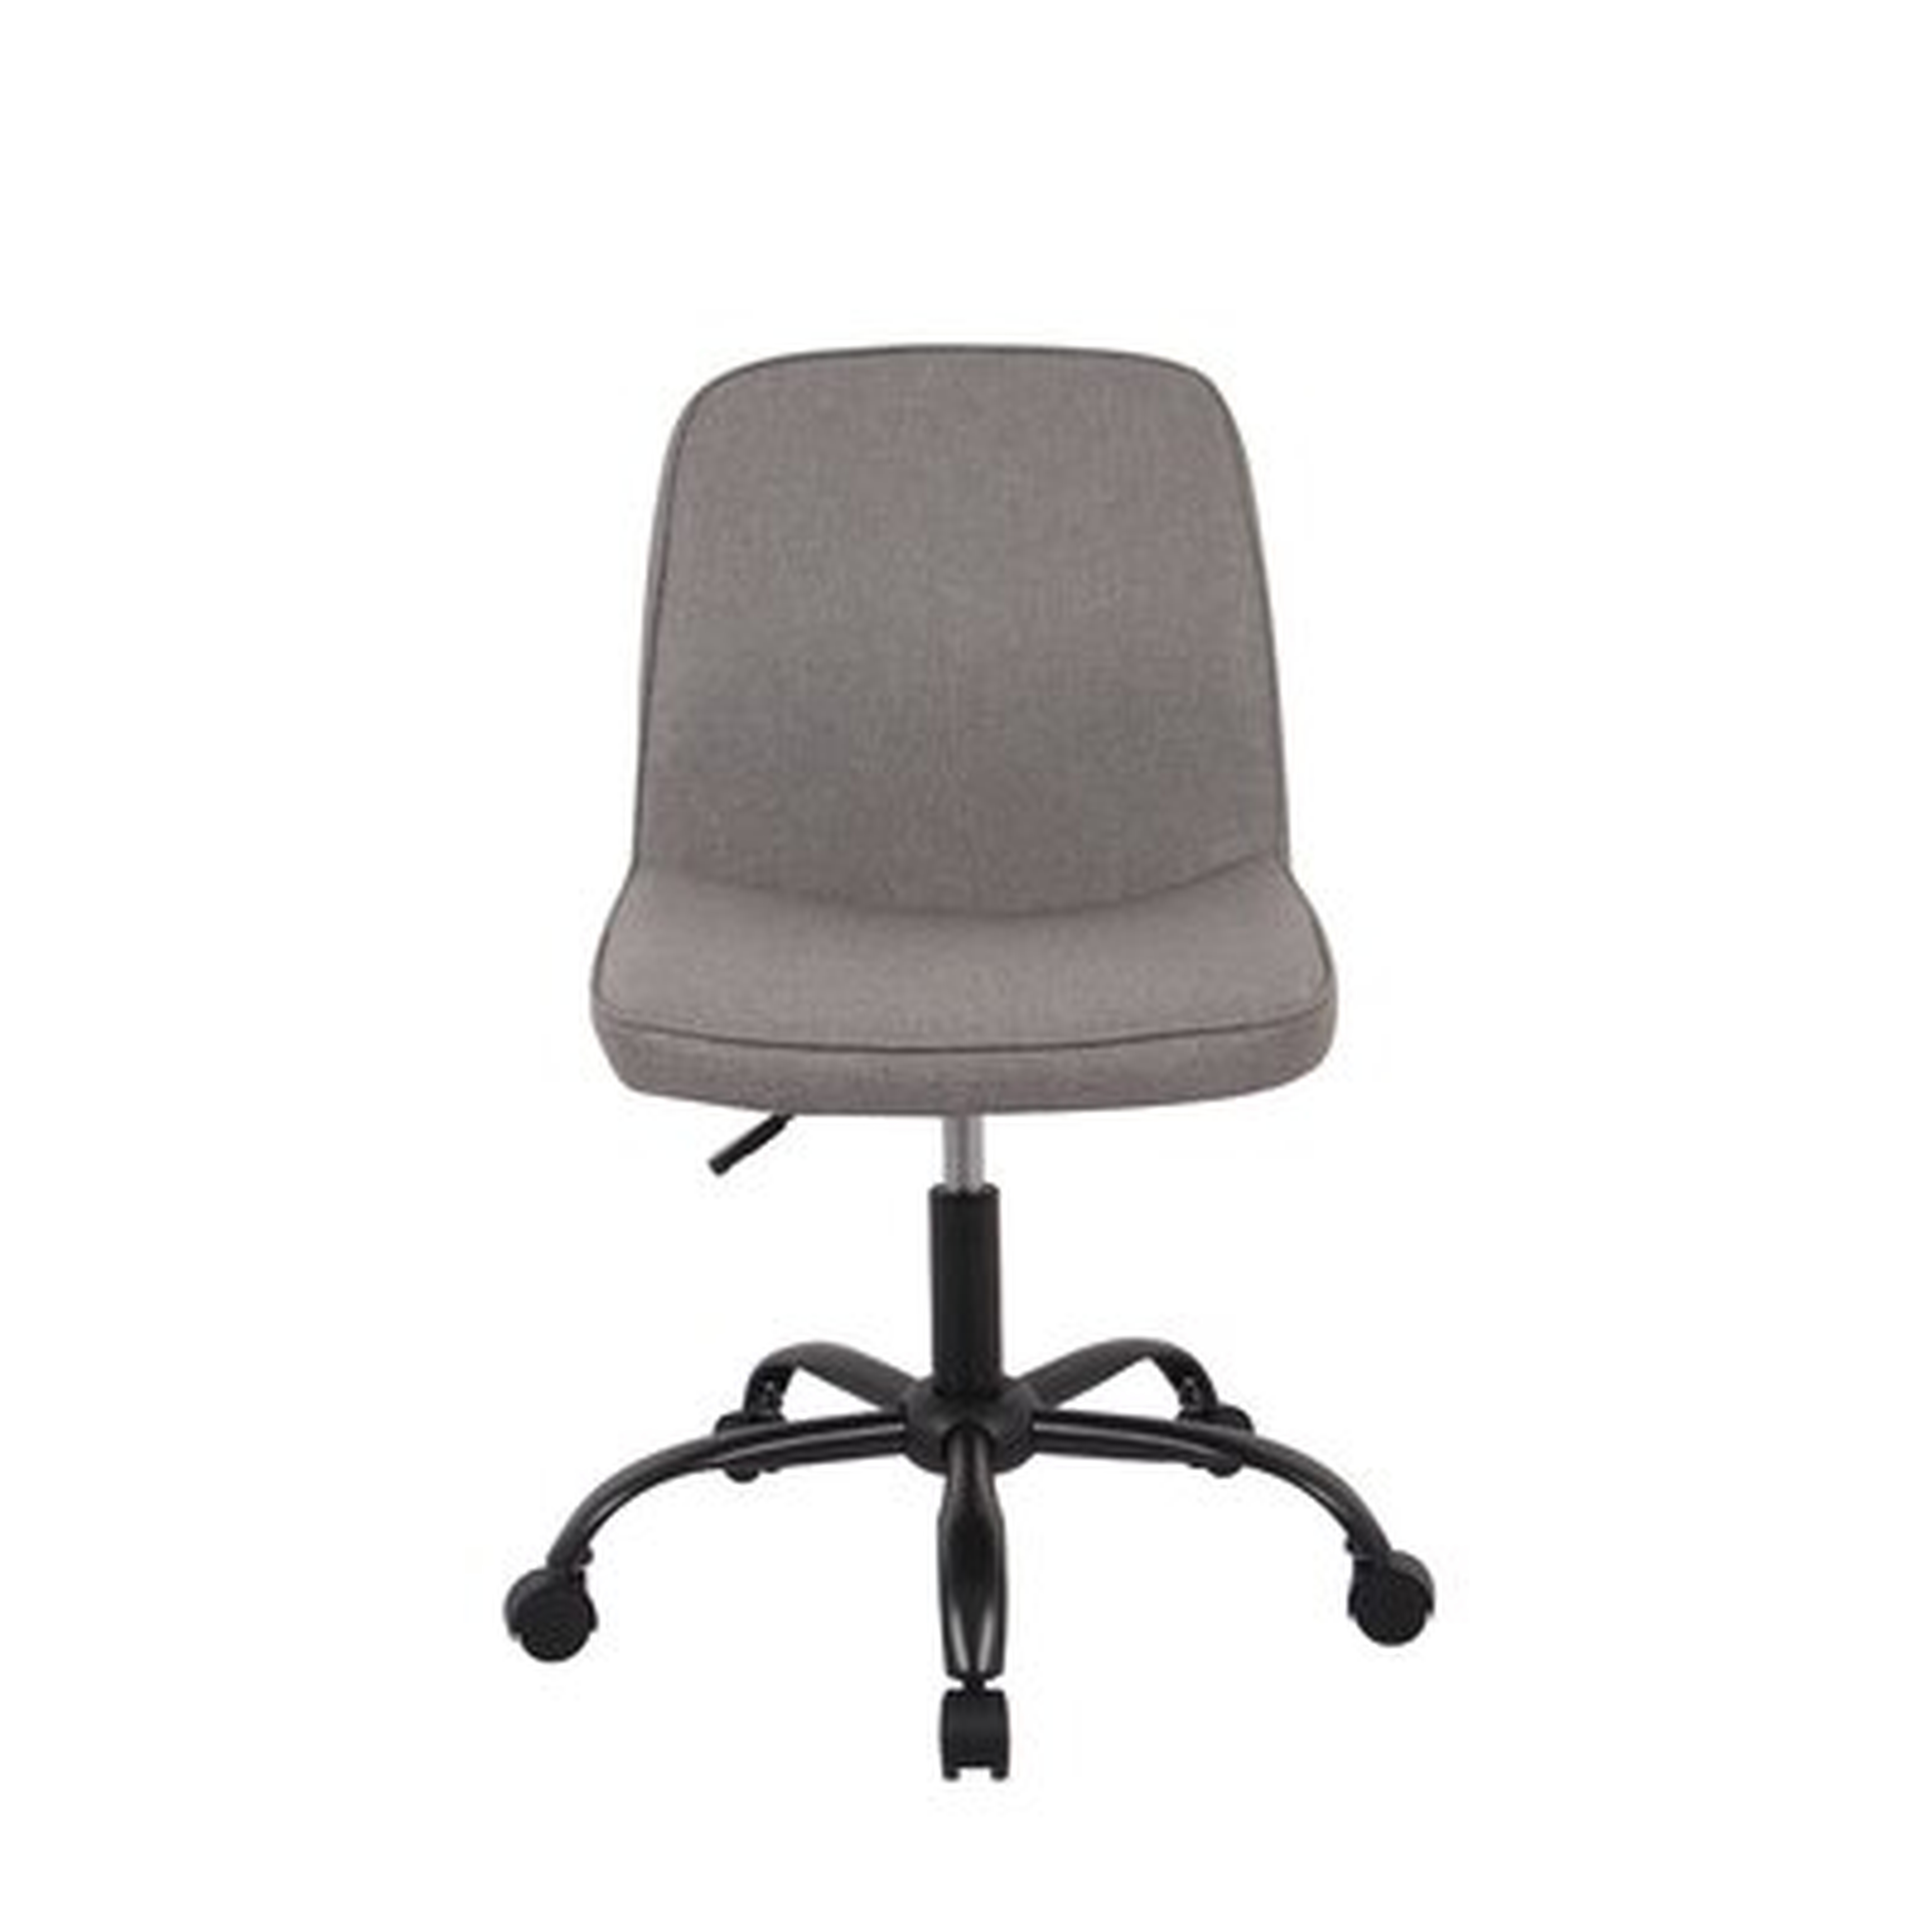 Task Chair - Wayfair